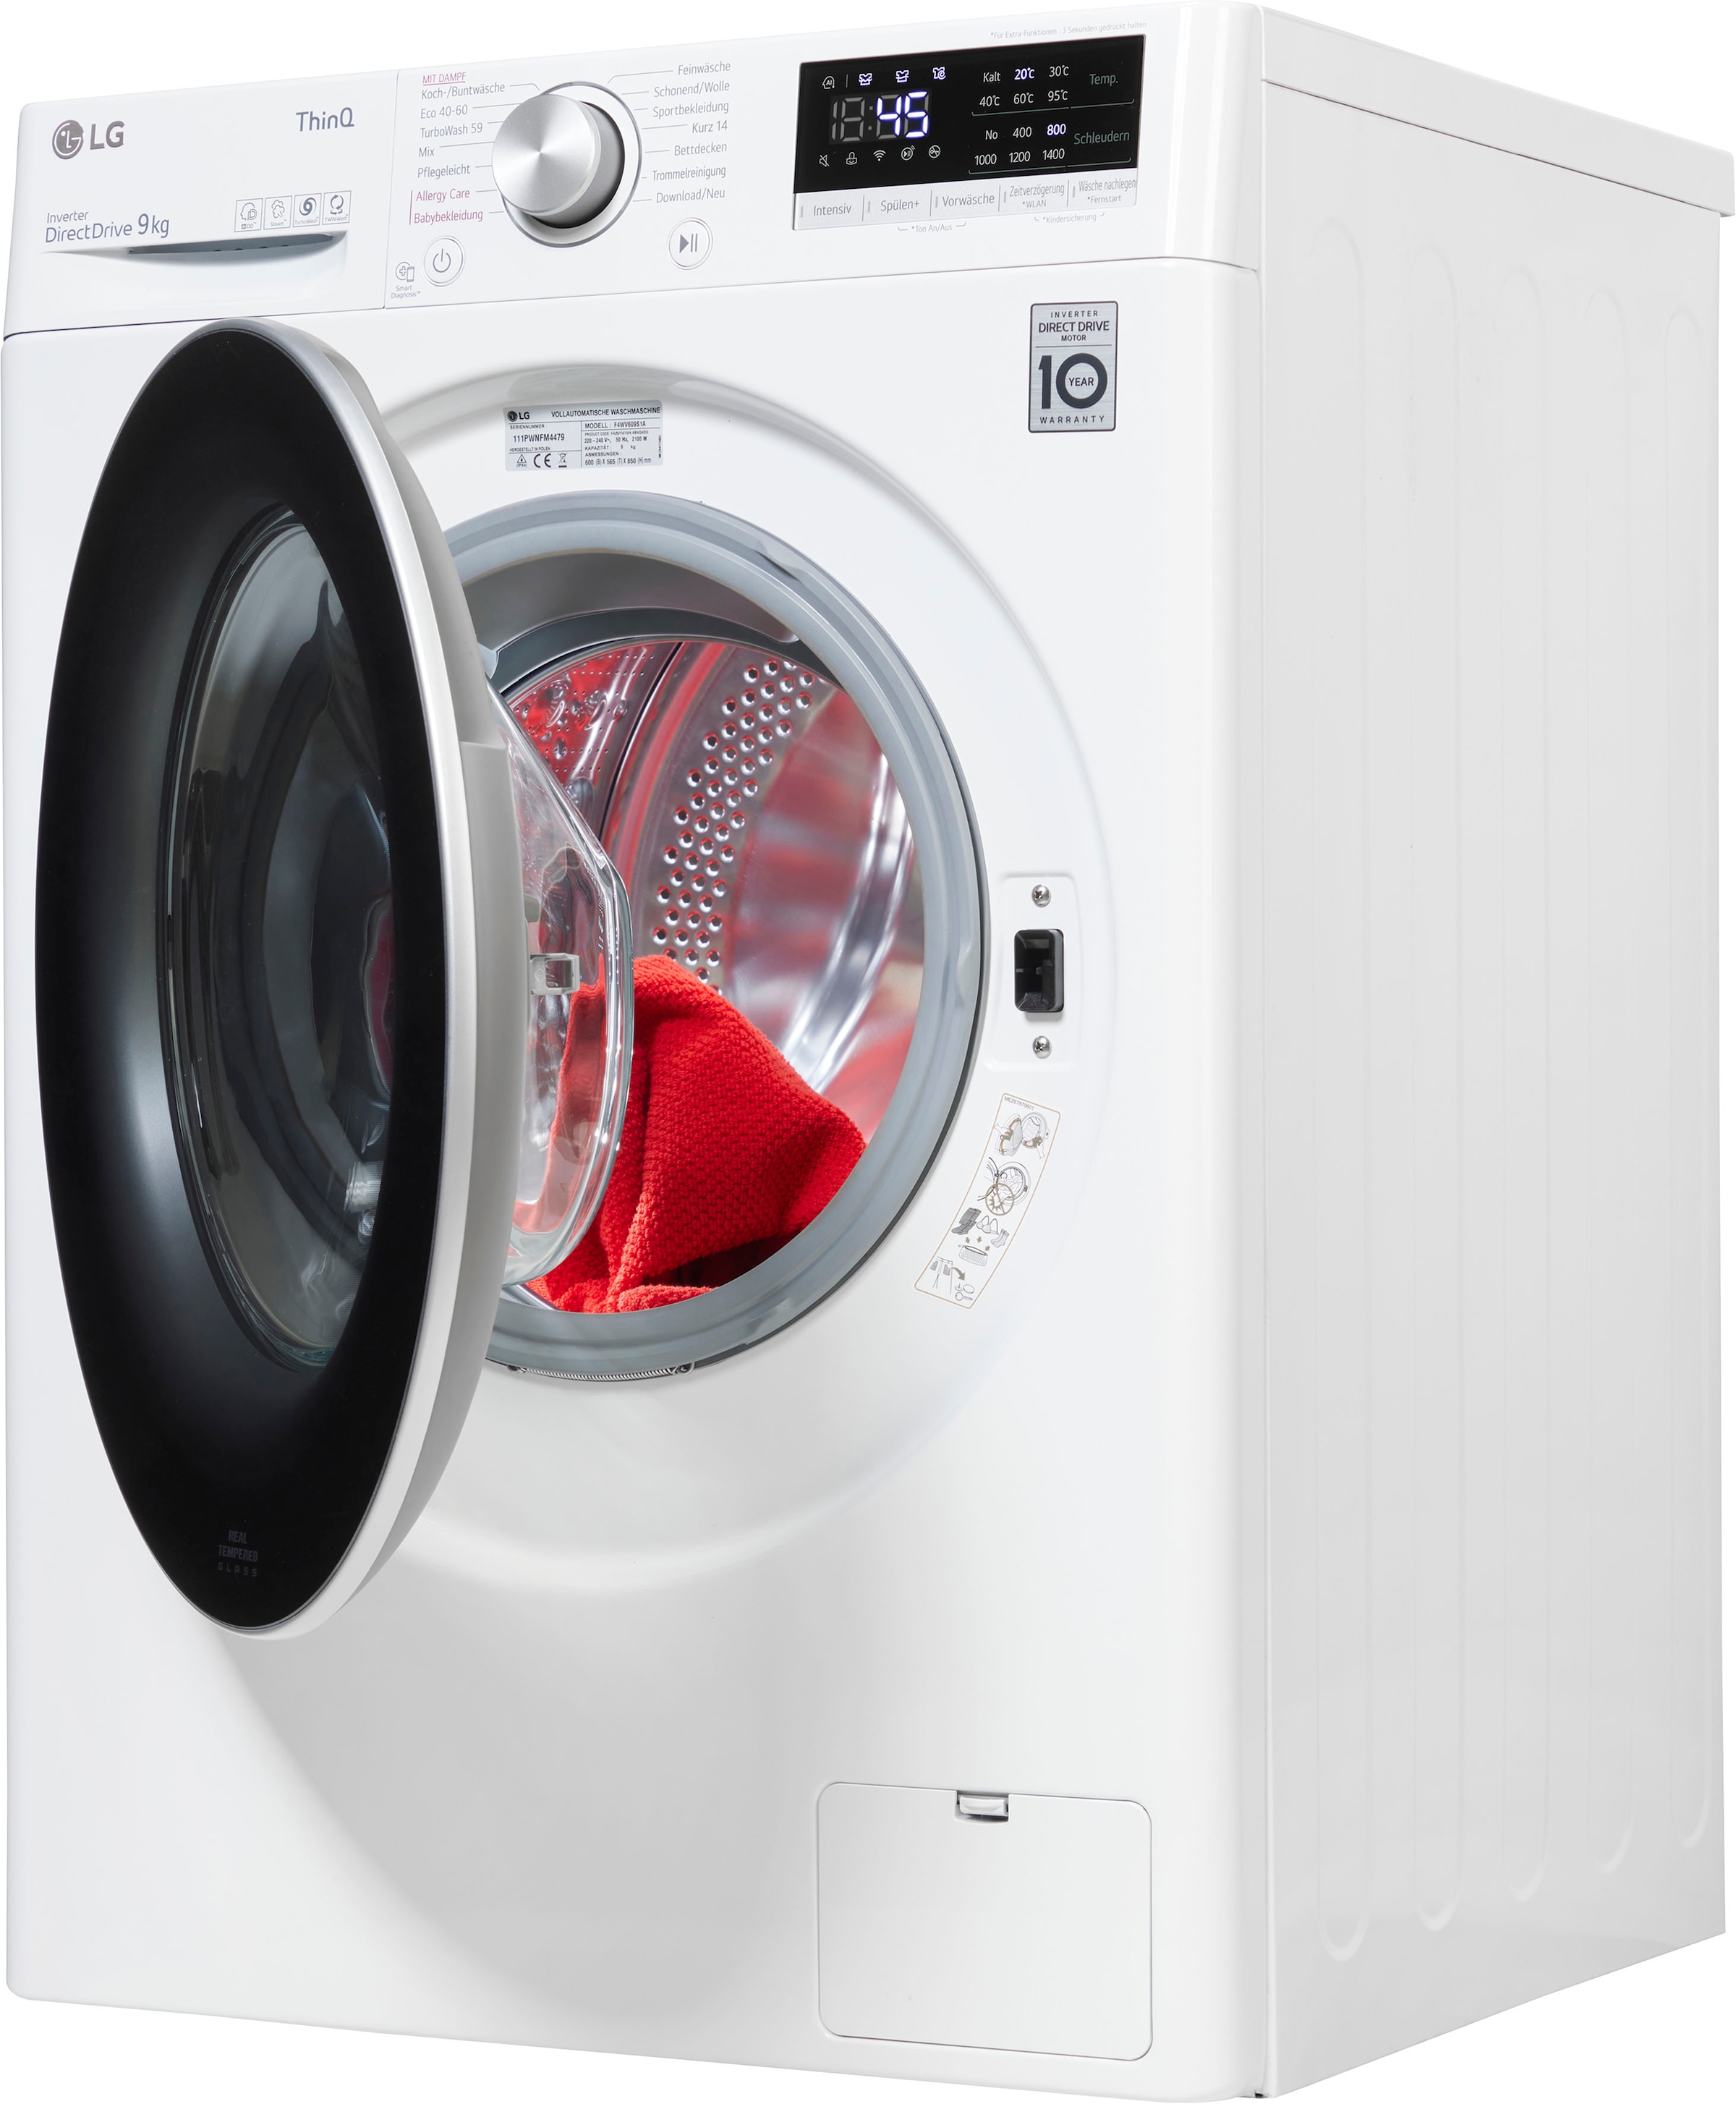 LG Waschmaschine U/min bei F4WV609S1A, »F4WV609S1A«, kg, 9 OTTO 1400 bestellen